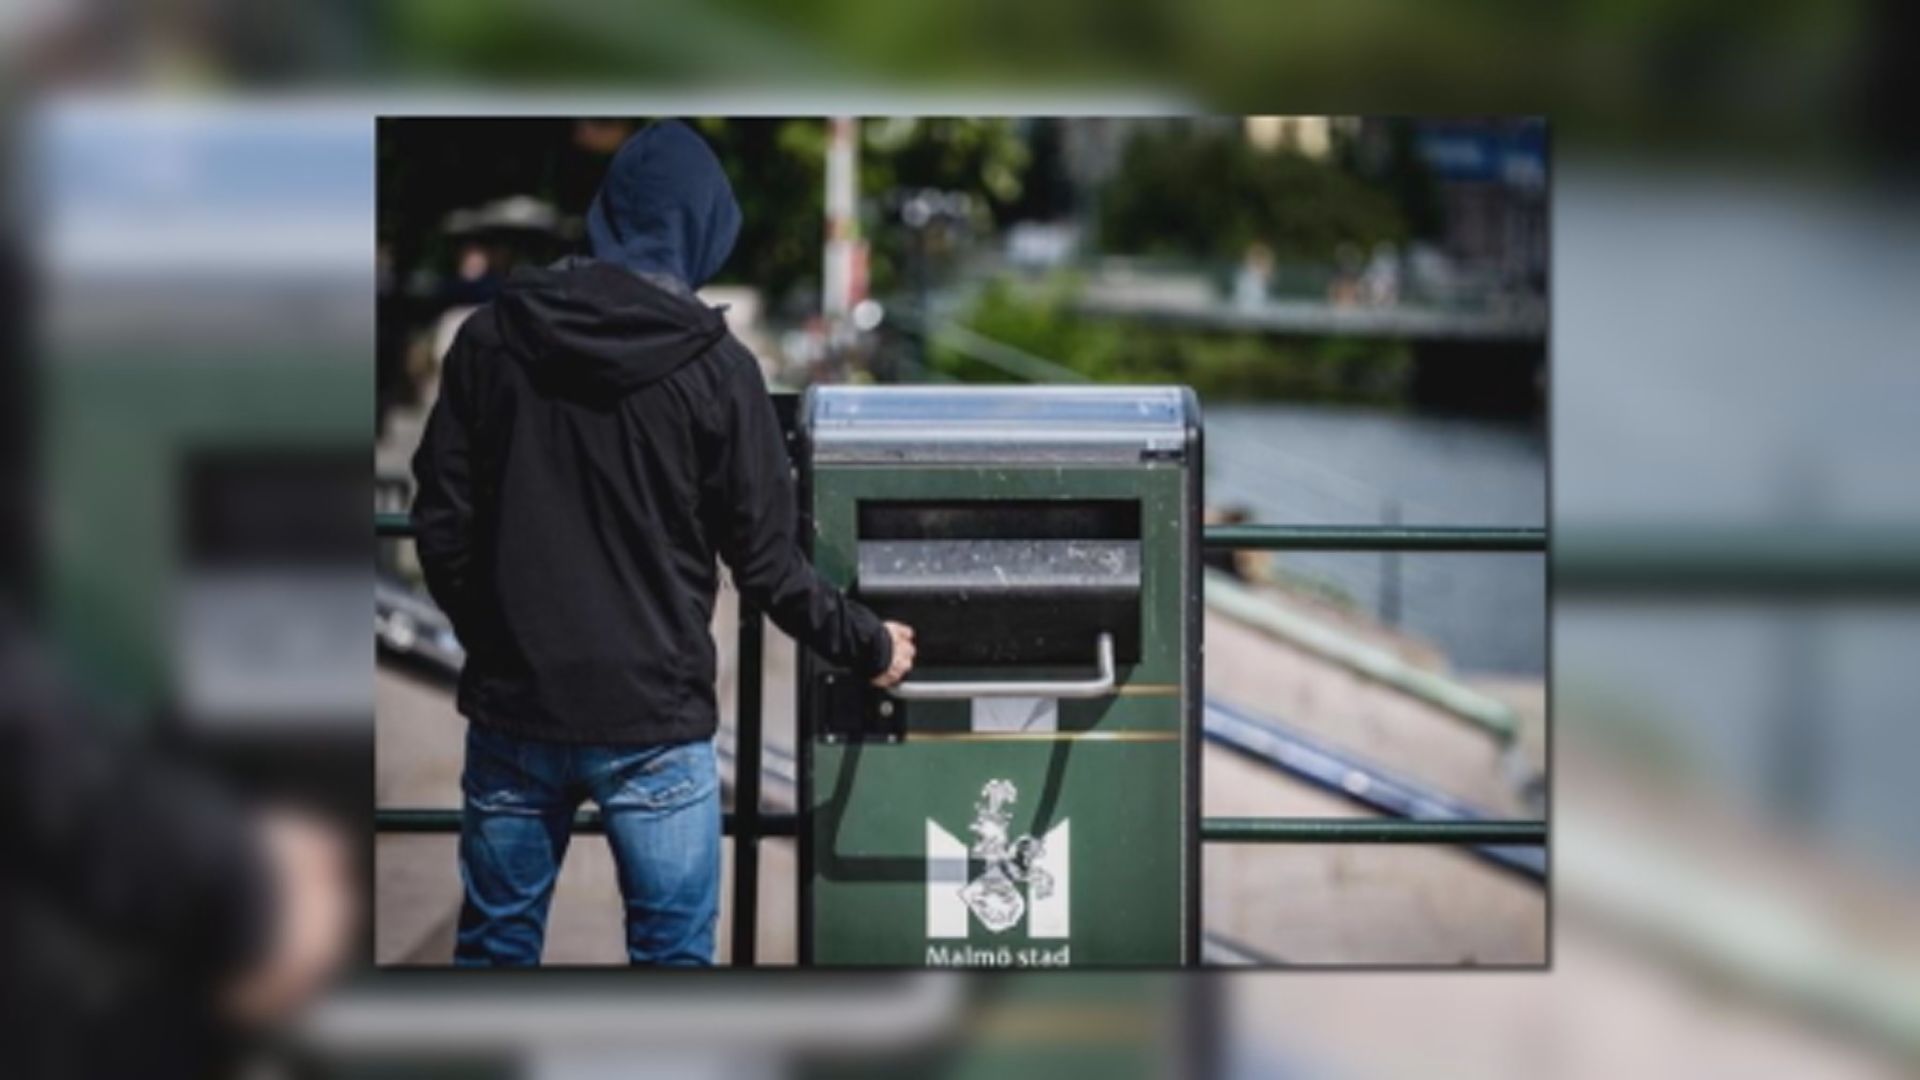 【環球薈報】瑞典發聲垃圾桶發出女性性感聲音引起熱議